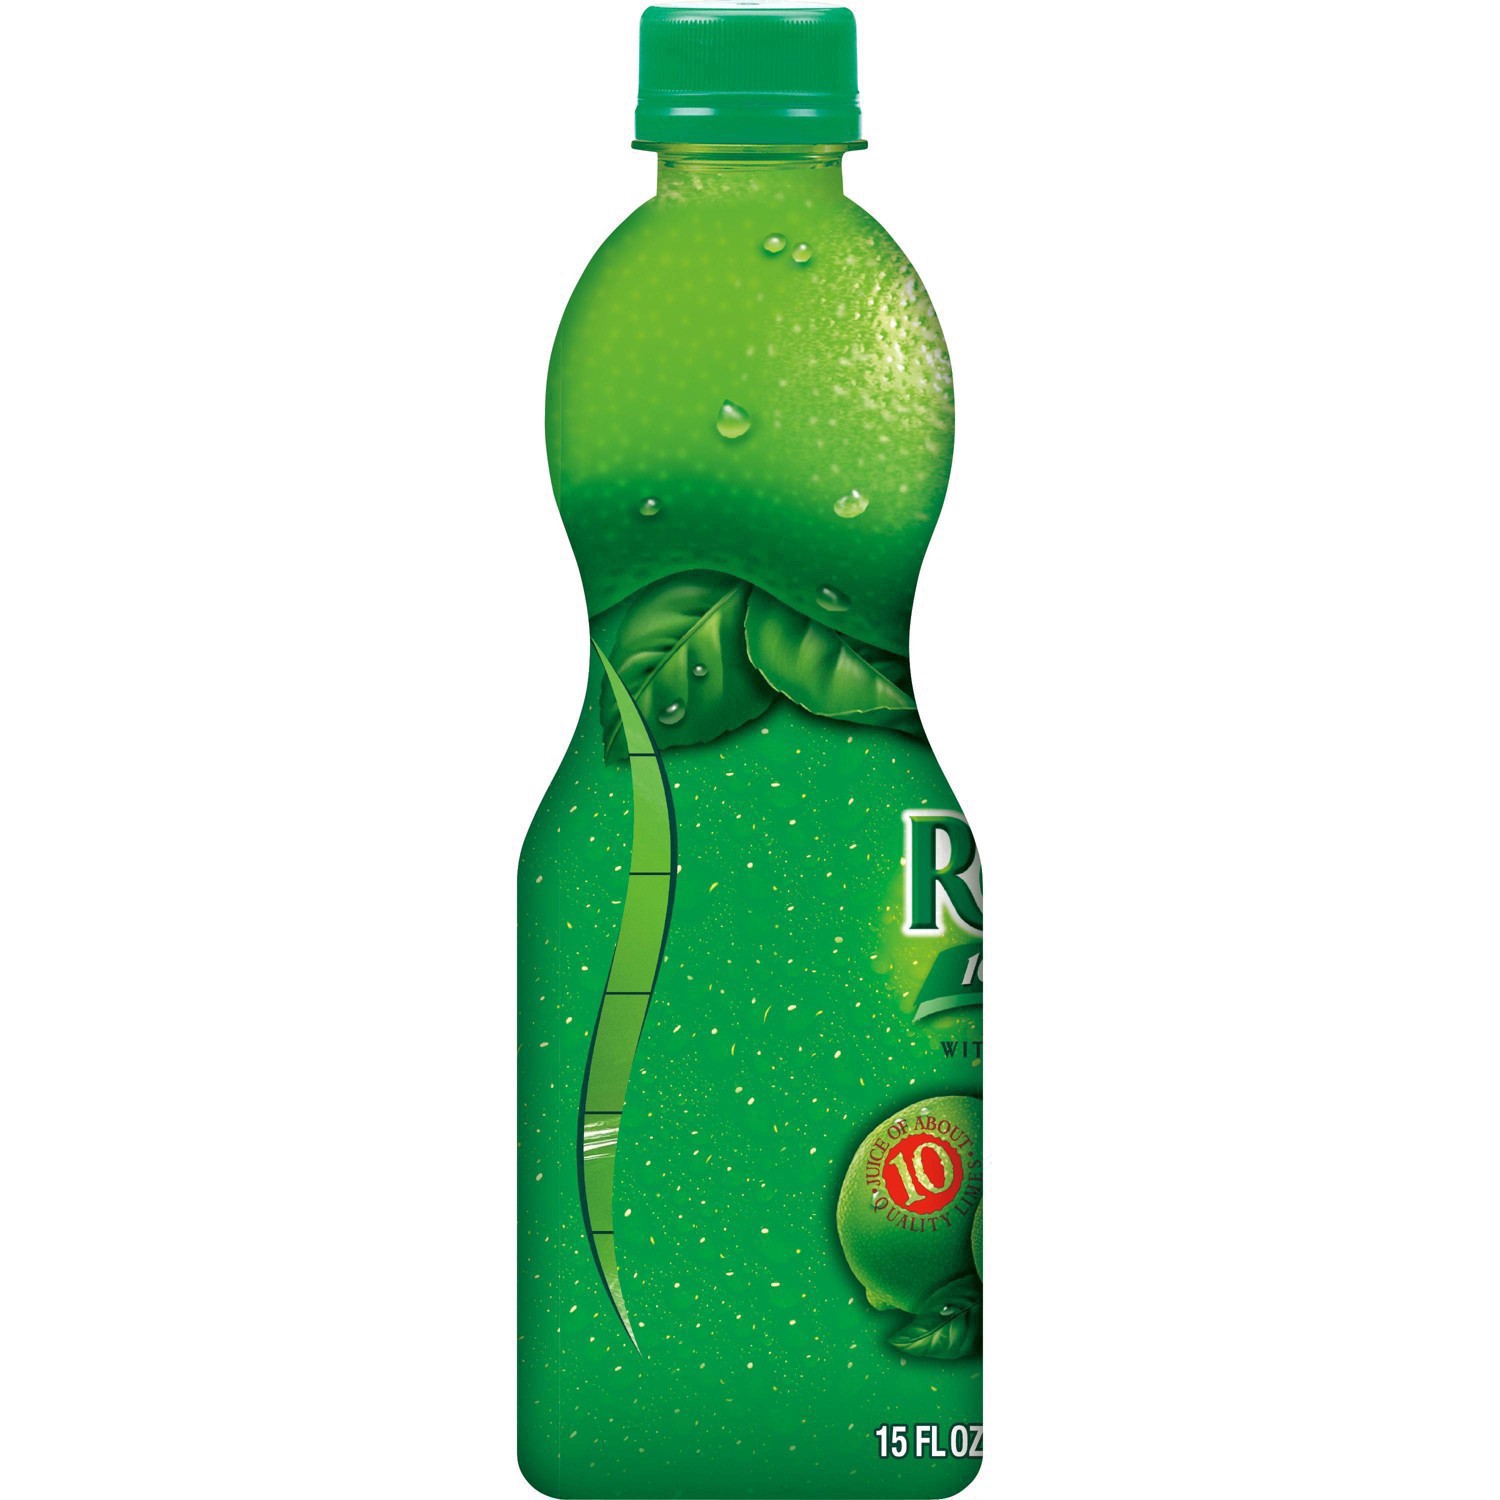 slide 21 of 68, ReaLime 100% Lime Juice Bottle, 15 fl oz